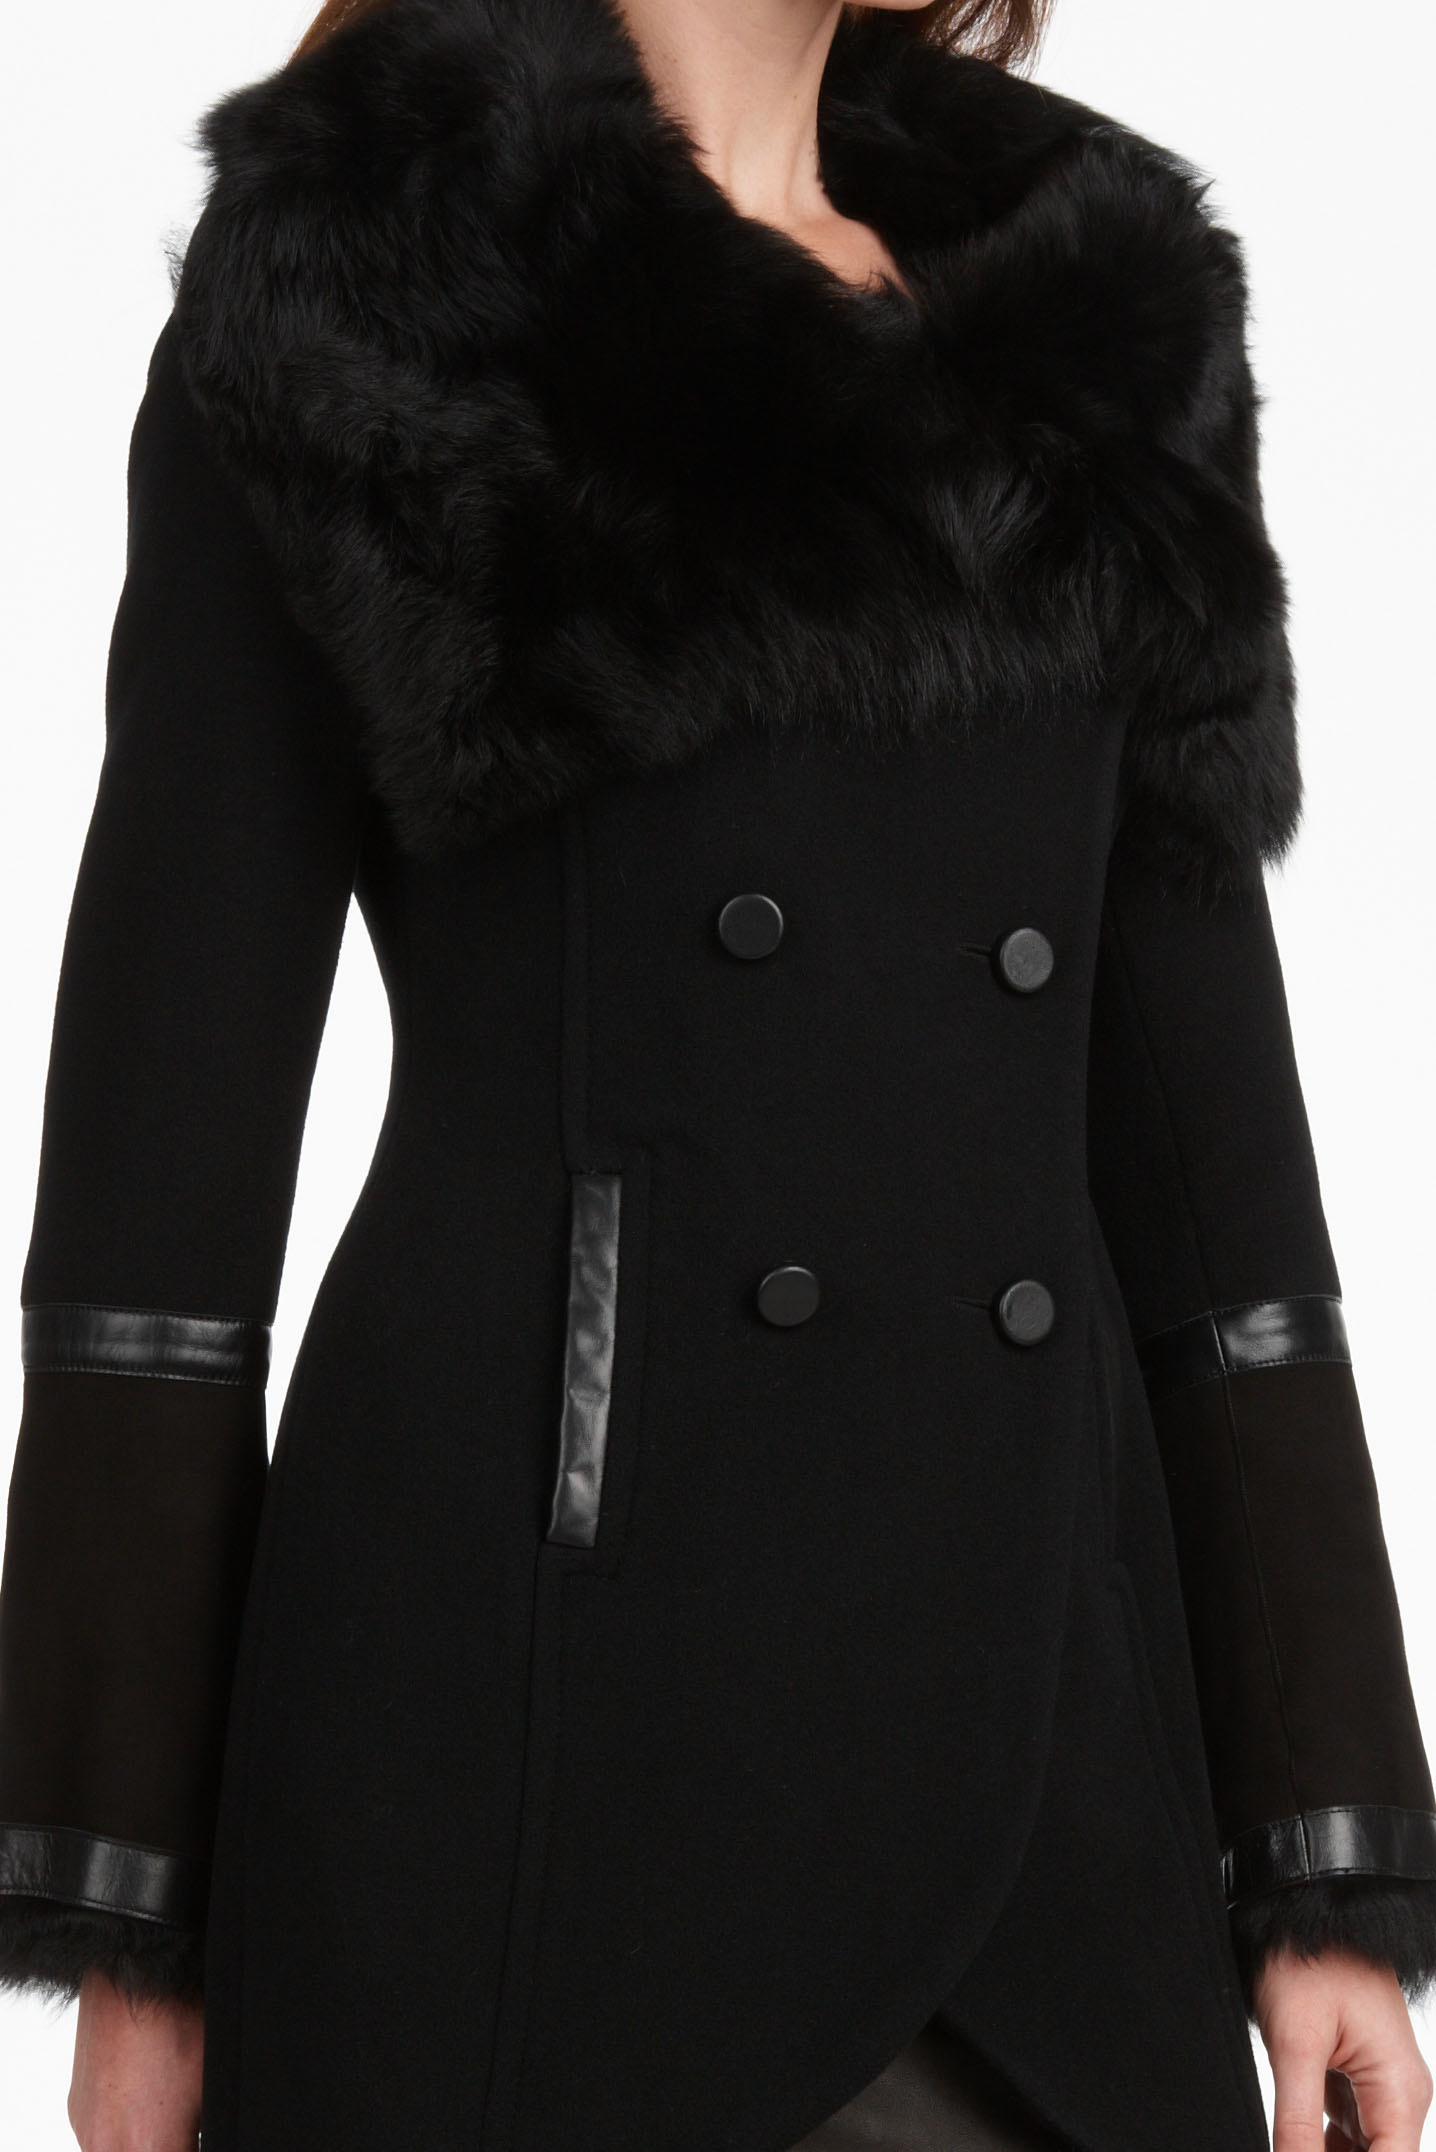 Lyst - Mackage Tanya Fur Collar Coat in Black